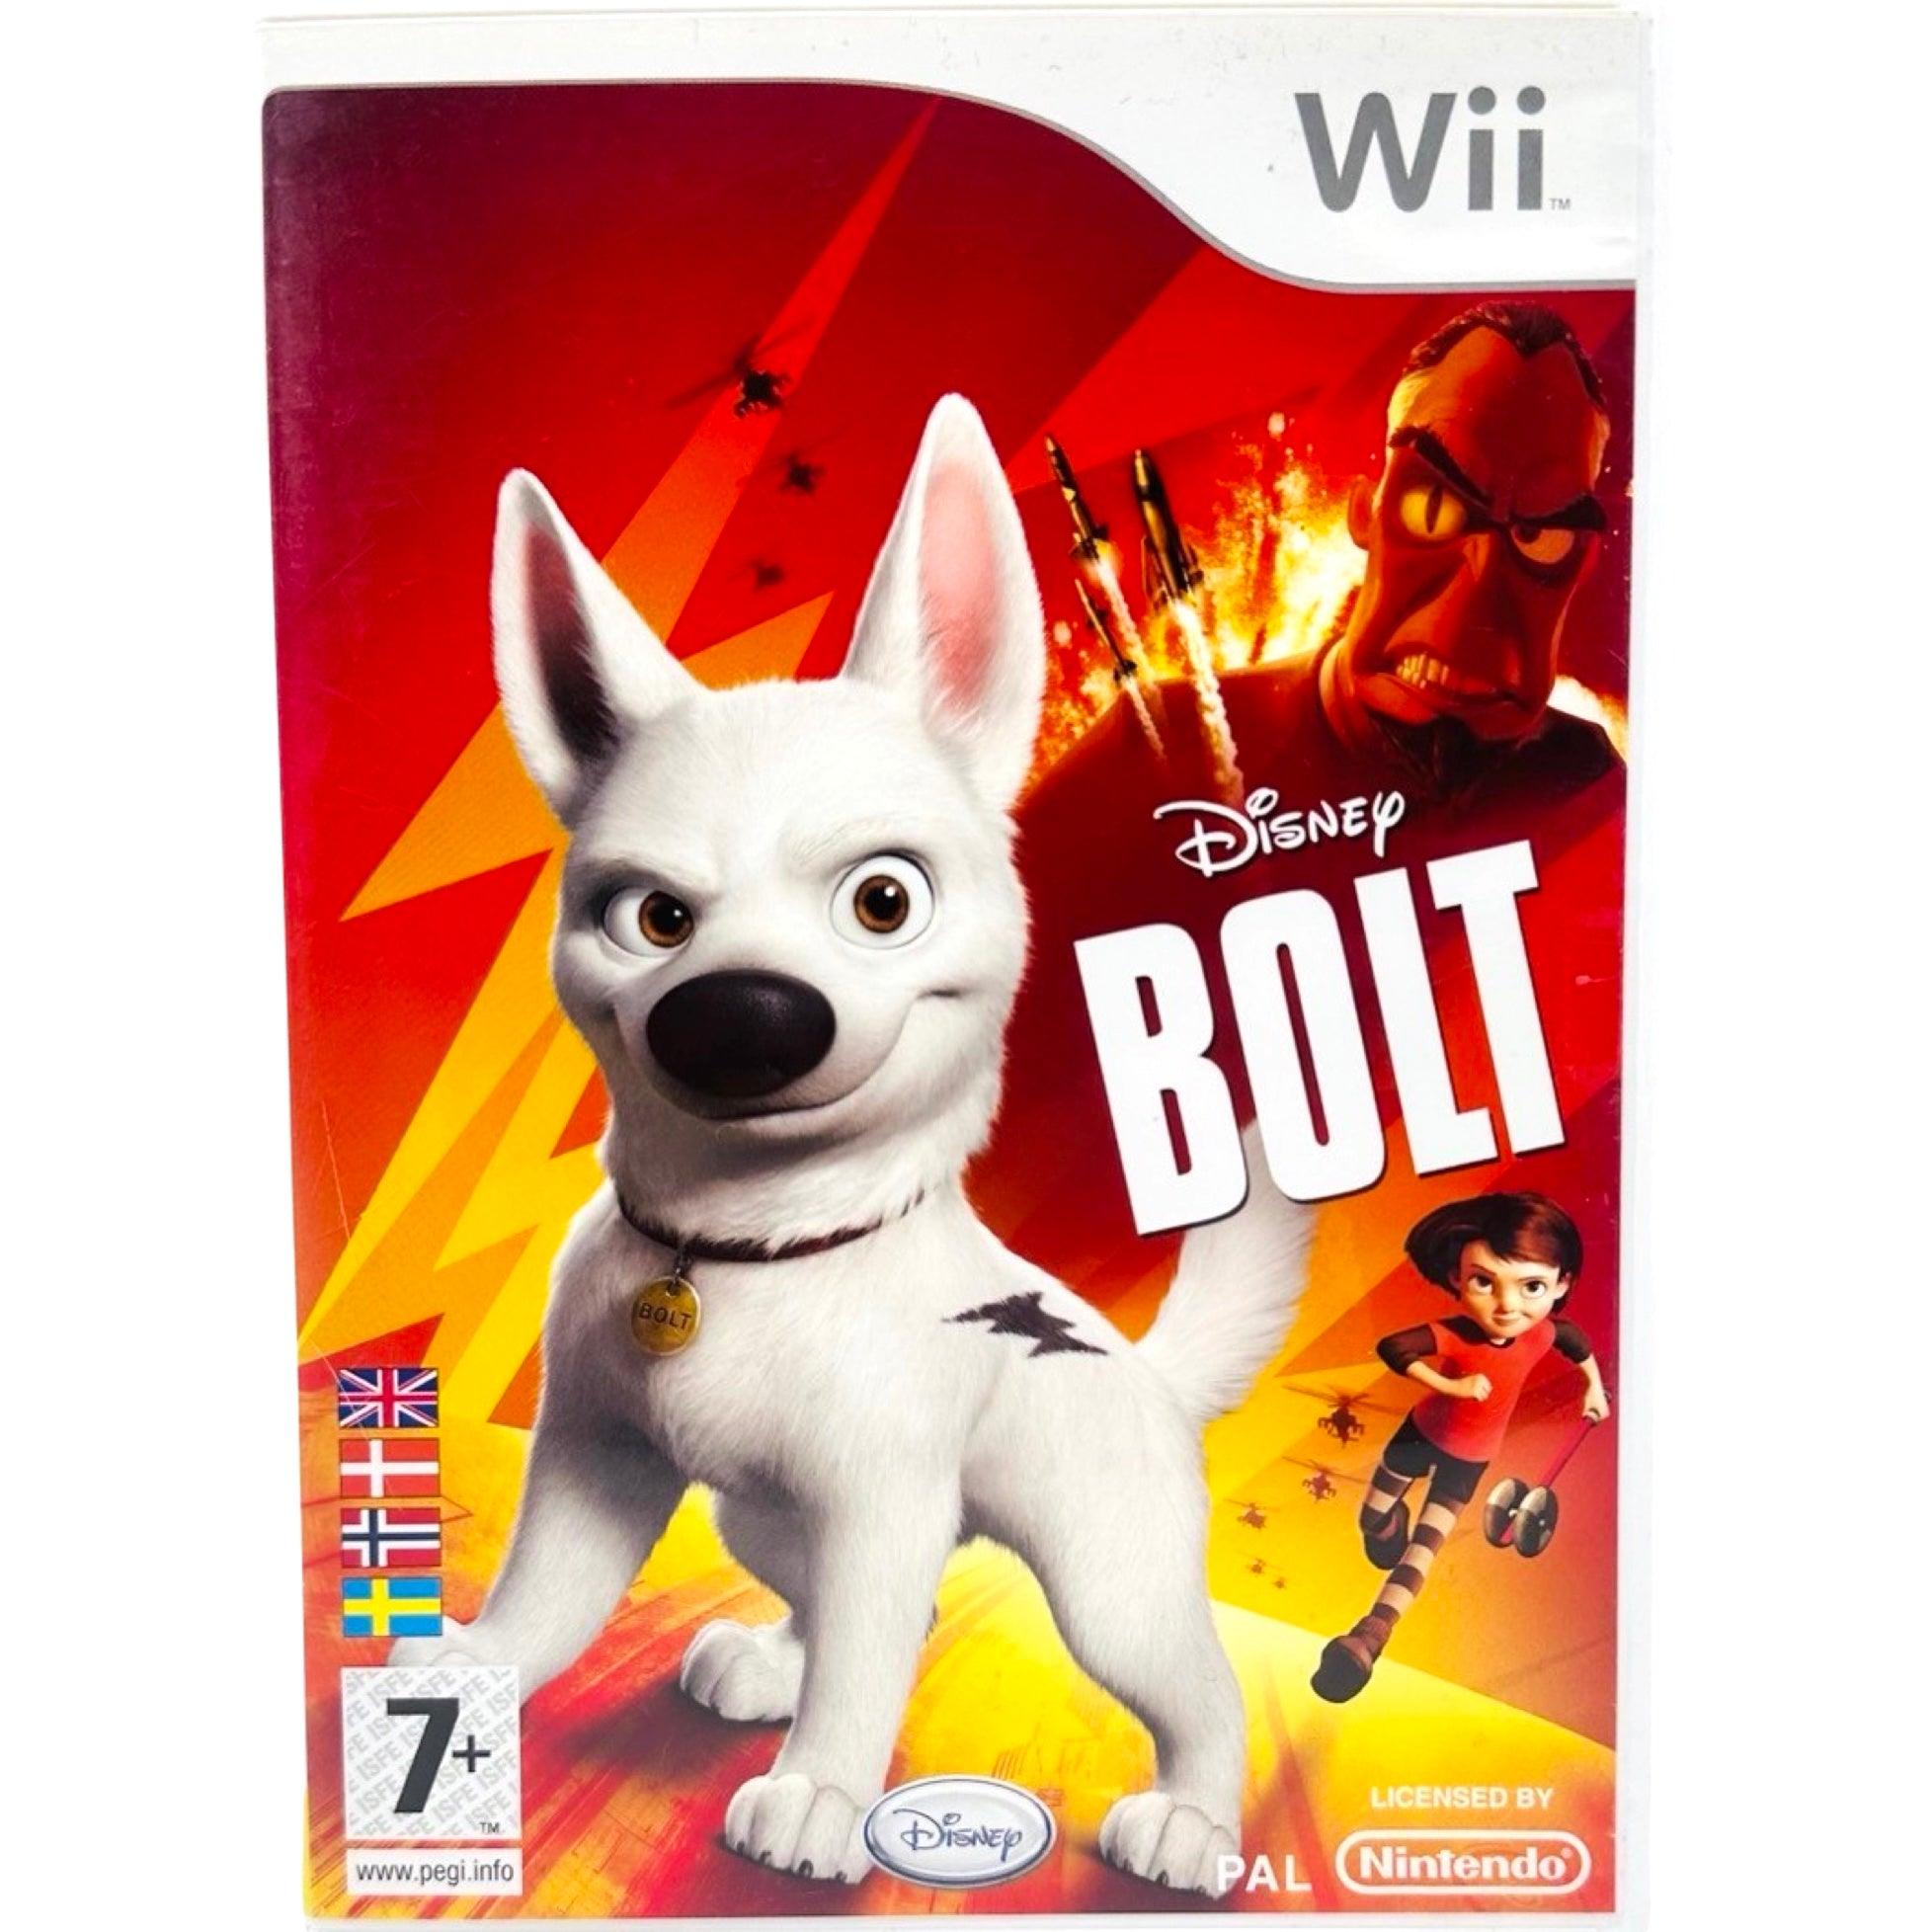 Wii: Bolt - RetroGaming.no